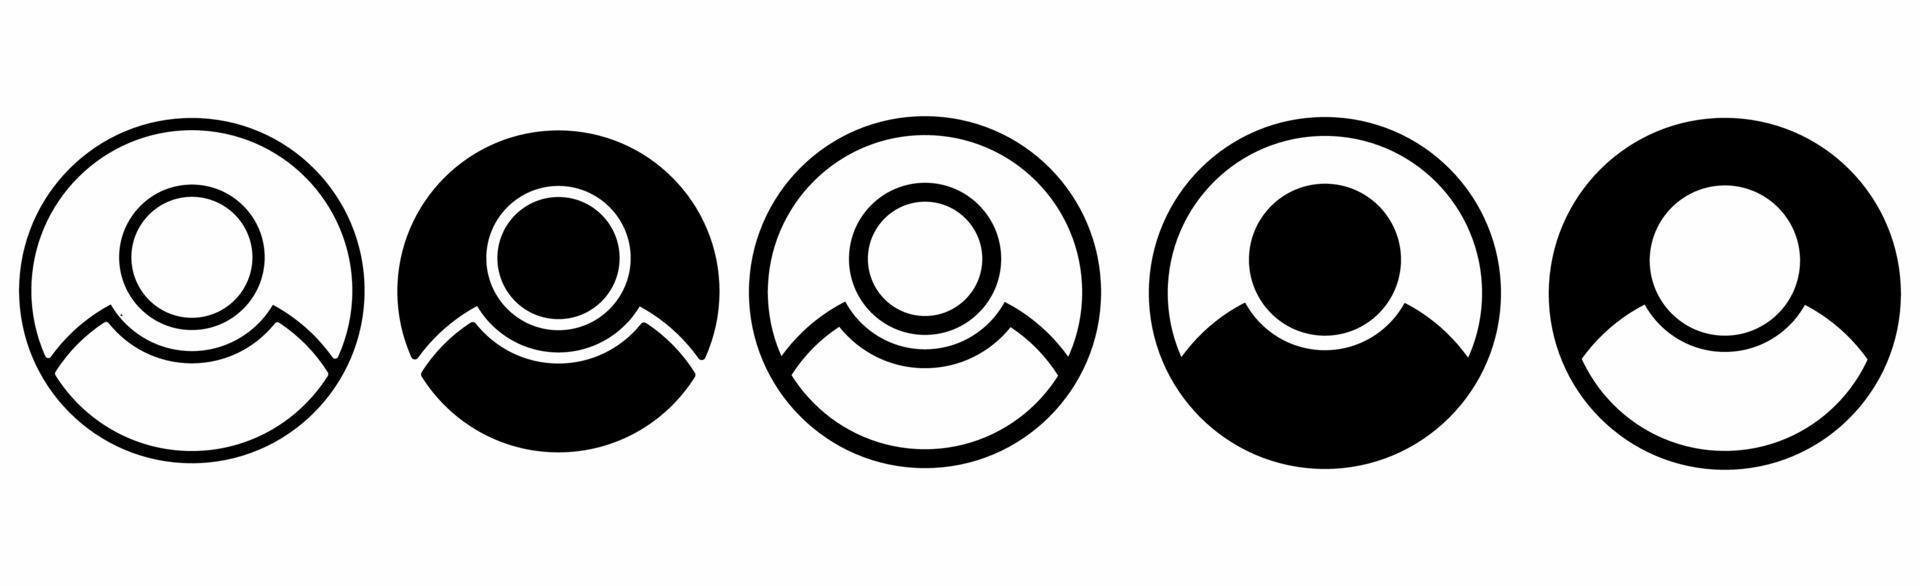 conjunto de iconos de usuario aislado sobre fondo blanco vector